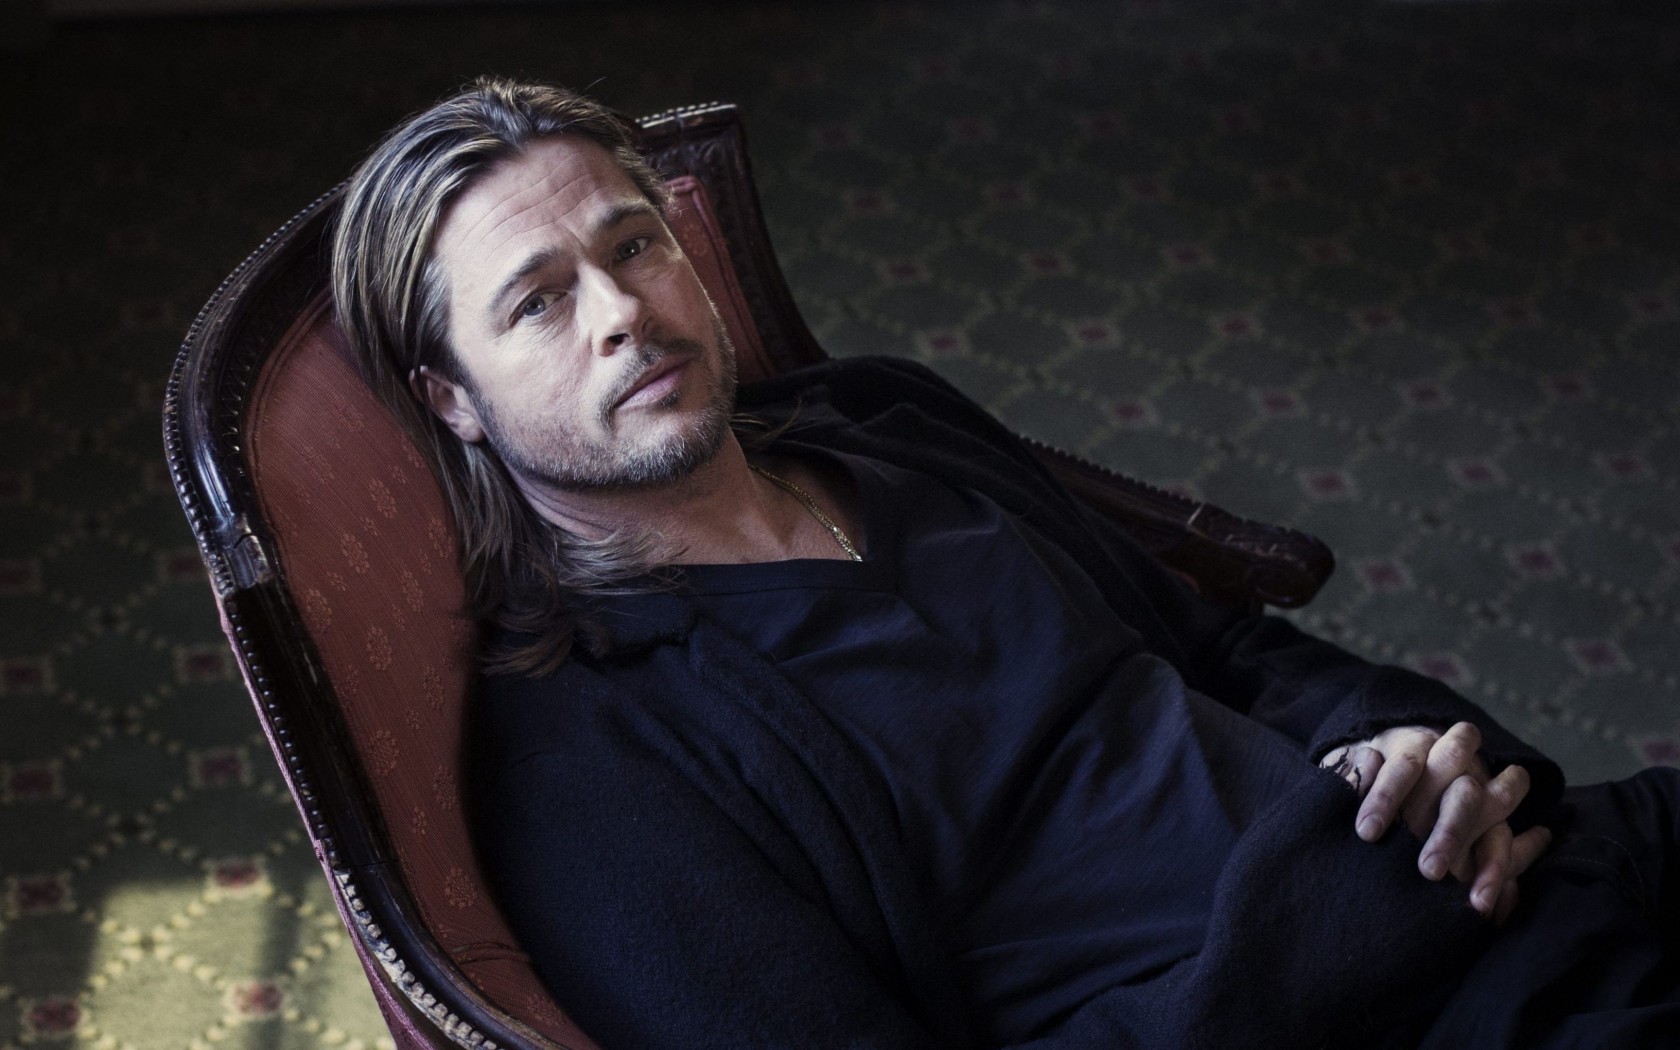 Brad Pitt Sitting On Chair Wallpaper for Desktop 1680x1050